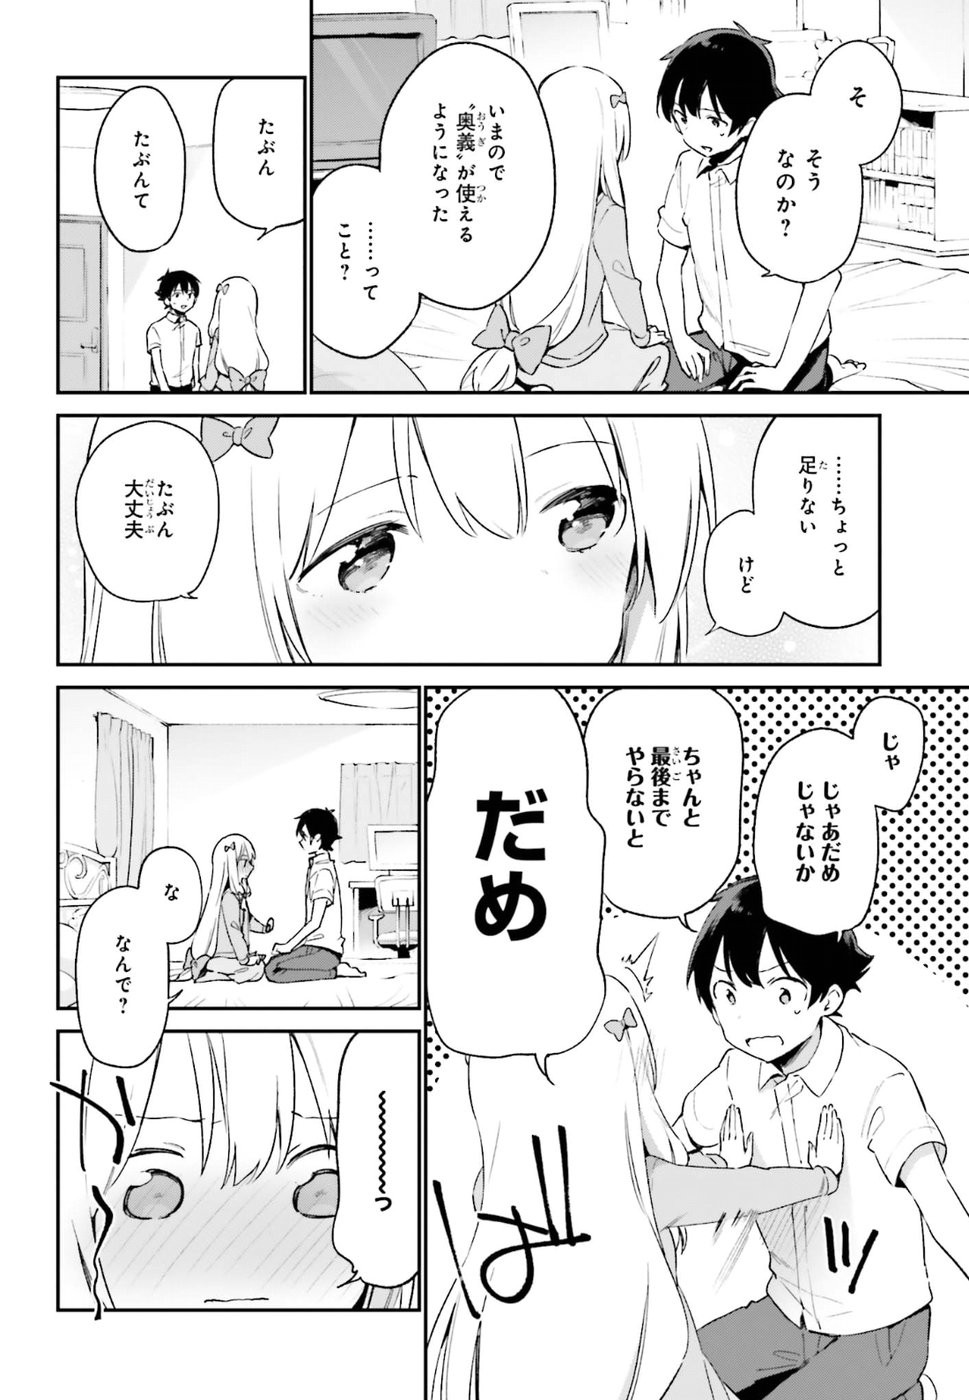 Ero Manga Sensei - Chapter 42 - Page 18